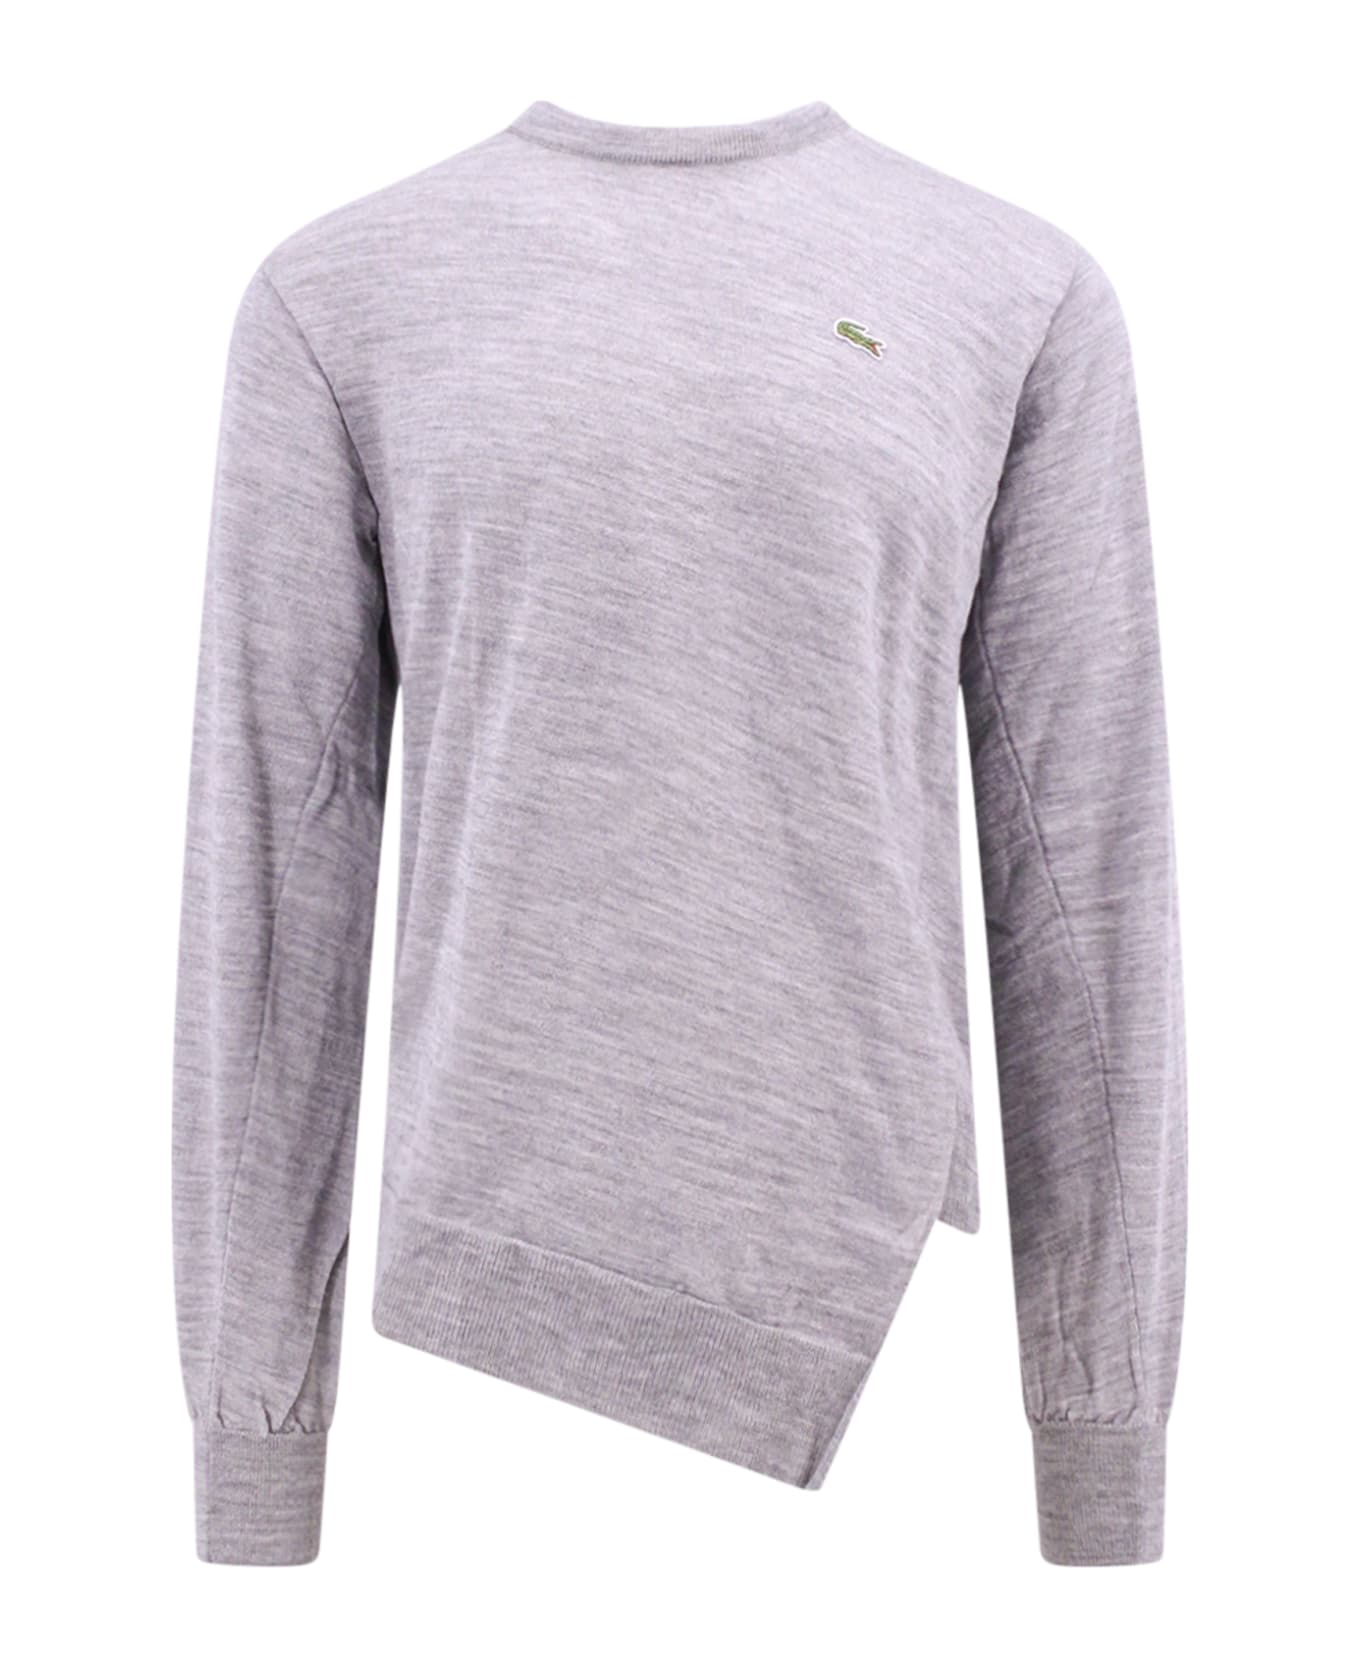 Comme des Garçons Shirt Sweater - Grey